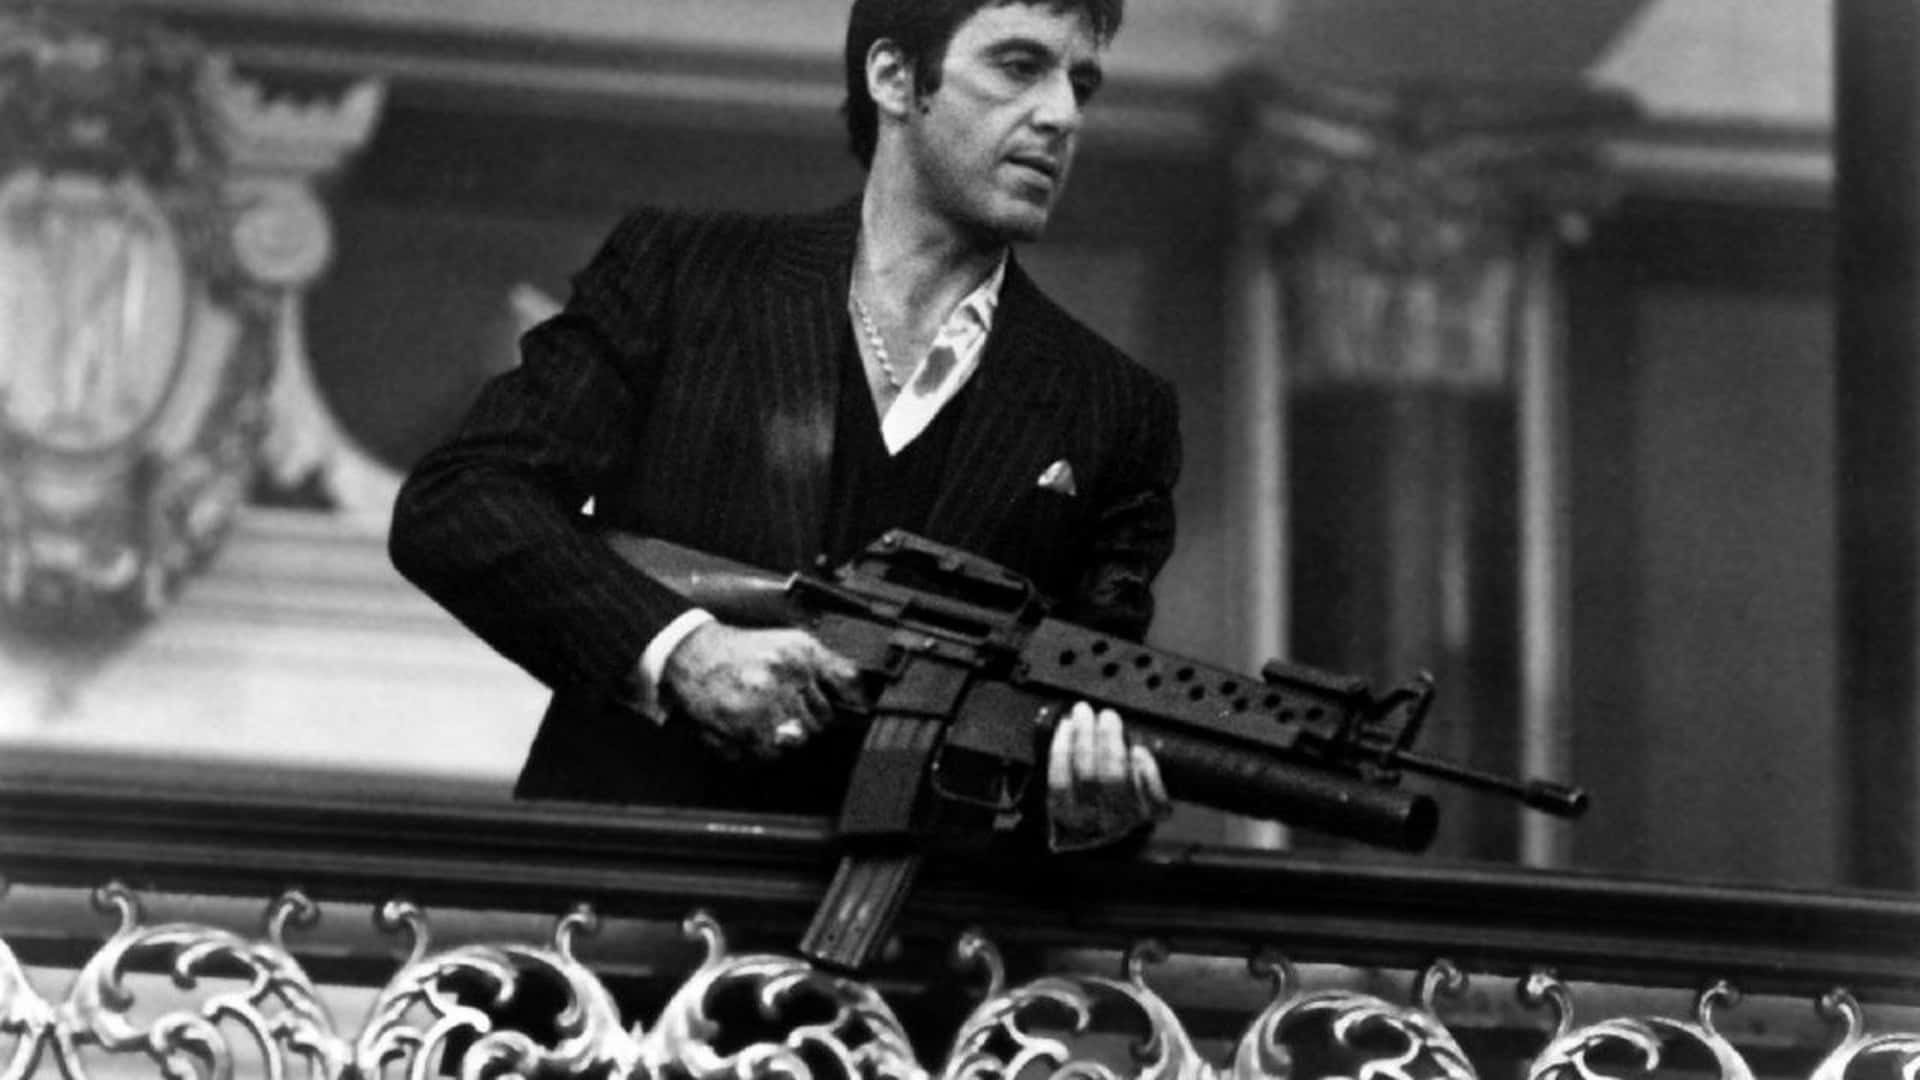 Al Pacino as Tony Montana in Scarface (1983)